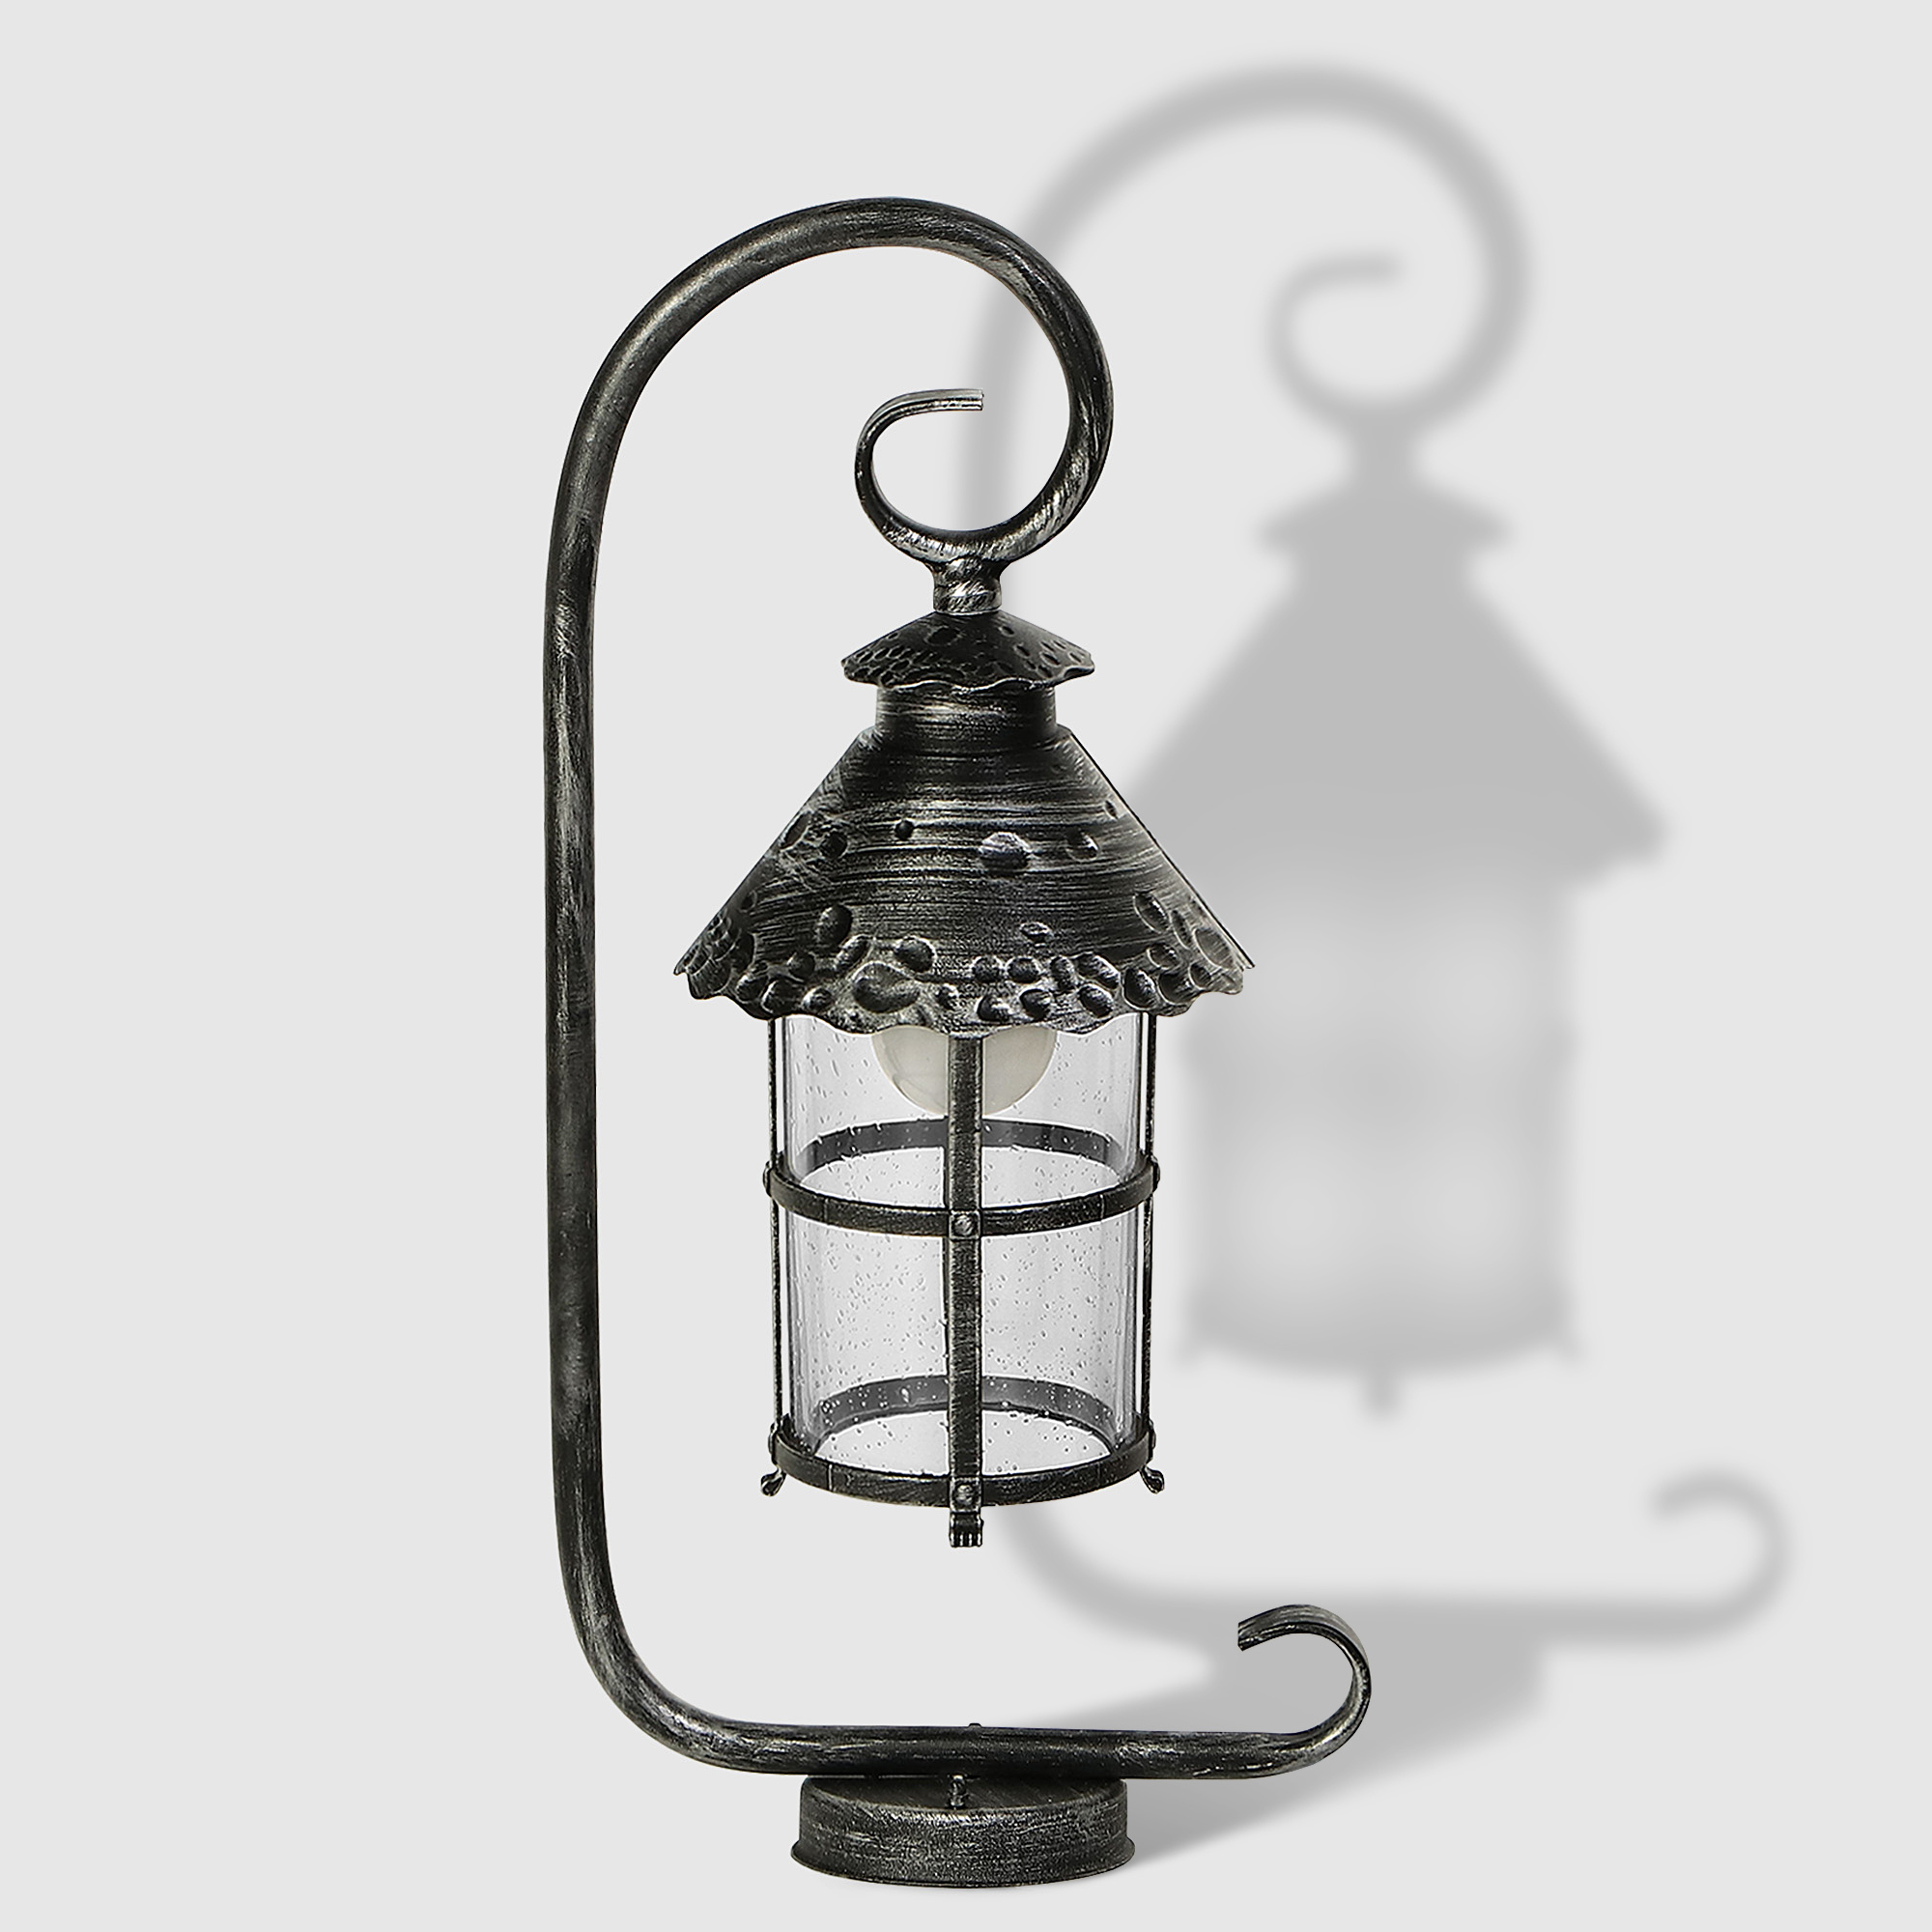 Светильник садовый Amber Lamp 8732B напольный IP23 E27 100Вт, чёрное серебро светильник садовый amber lamp 9122b напольный ip44 e27 100вт черное серебро